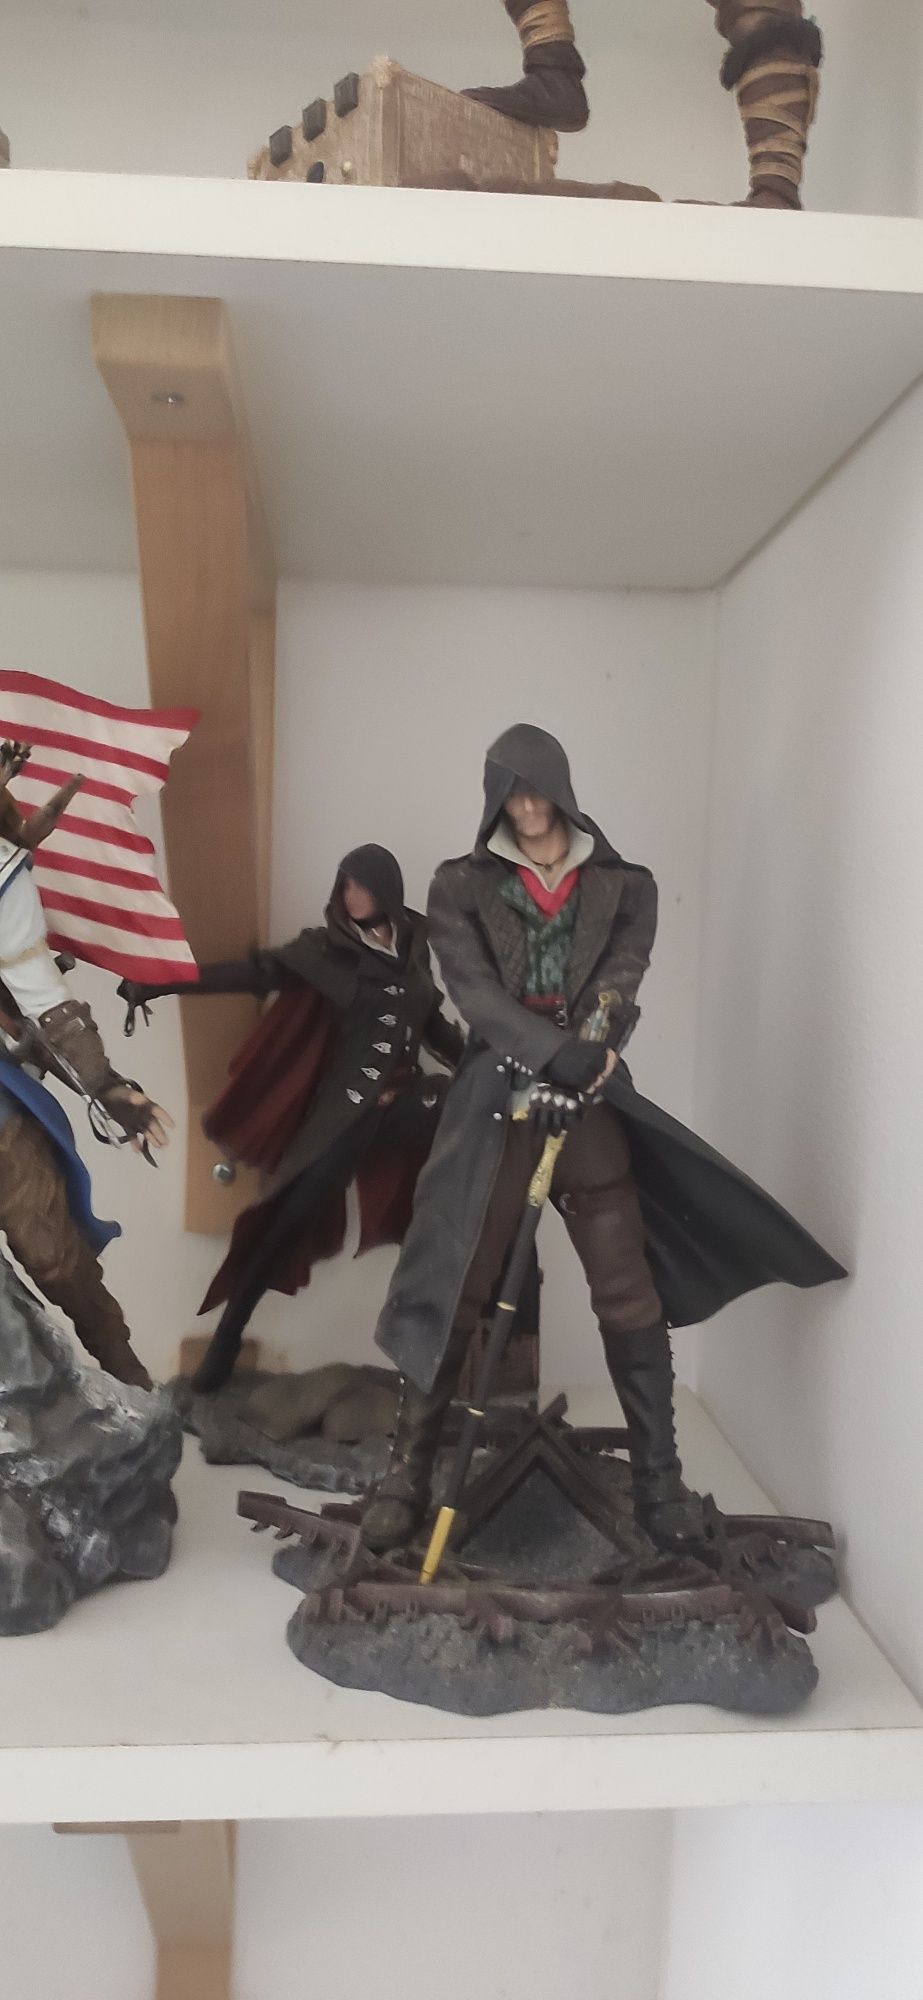 Mega colecção Assassin's Creed